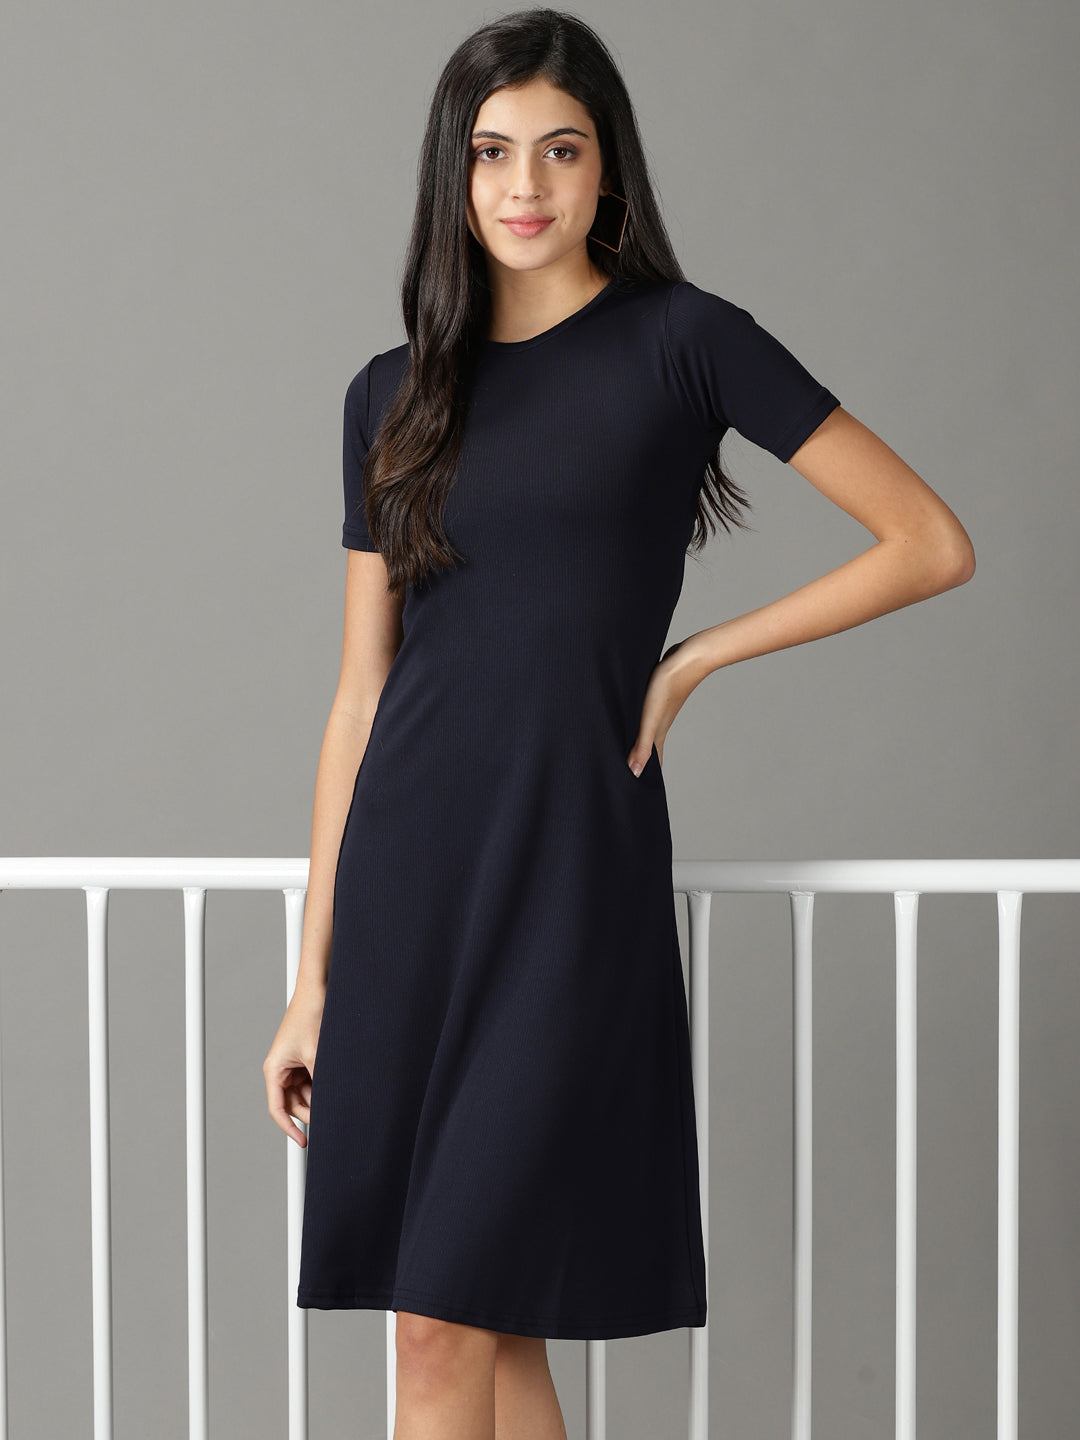 Women's Navy Blue Solid A-Line Dress